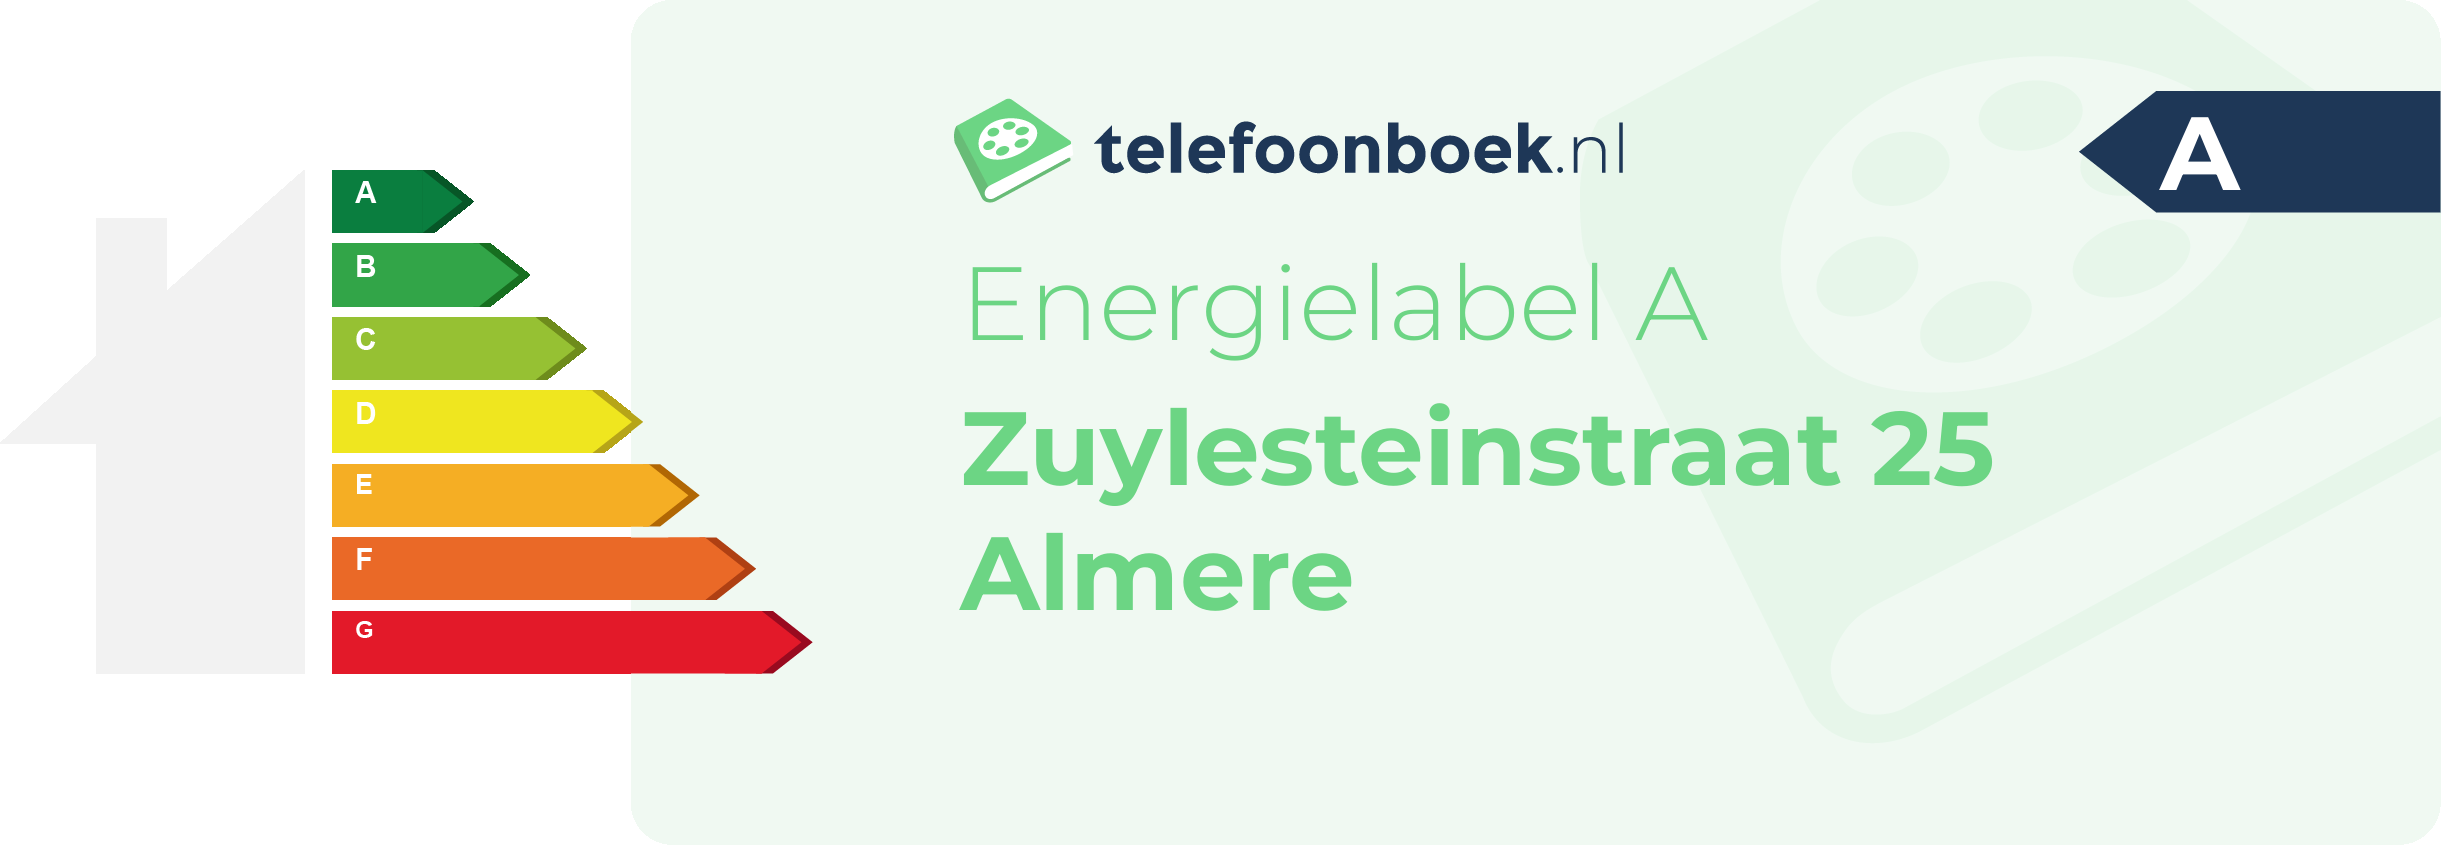 Energielabel Zuylesteinstraat 25 Almere